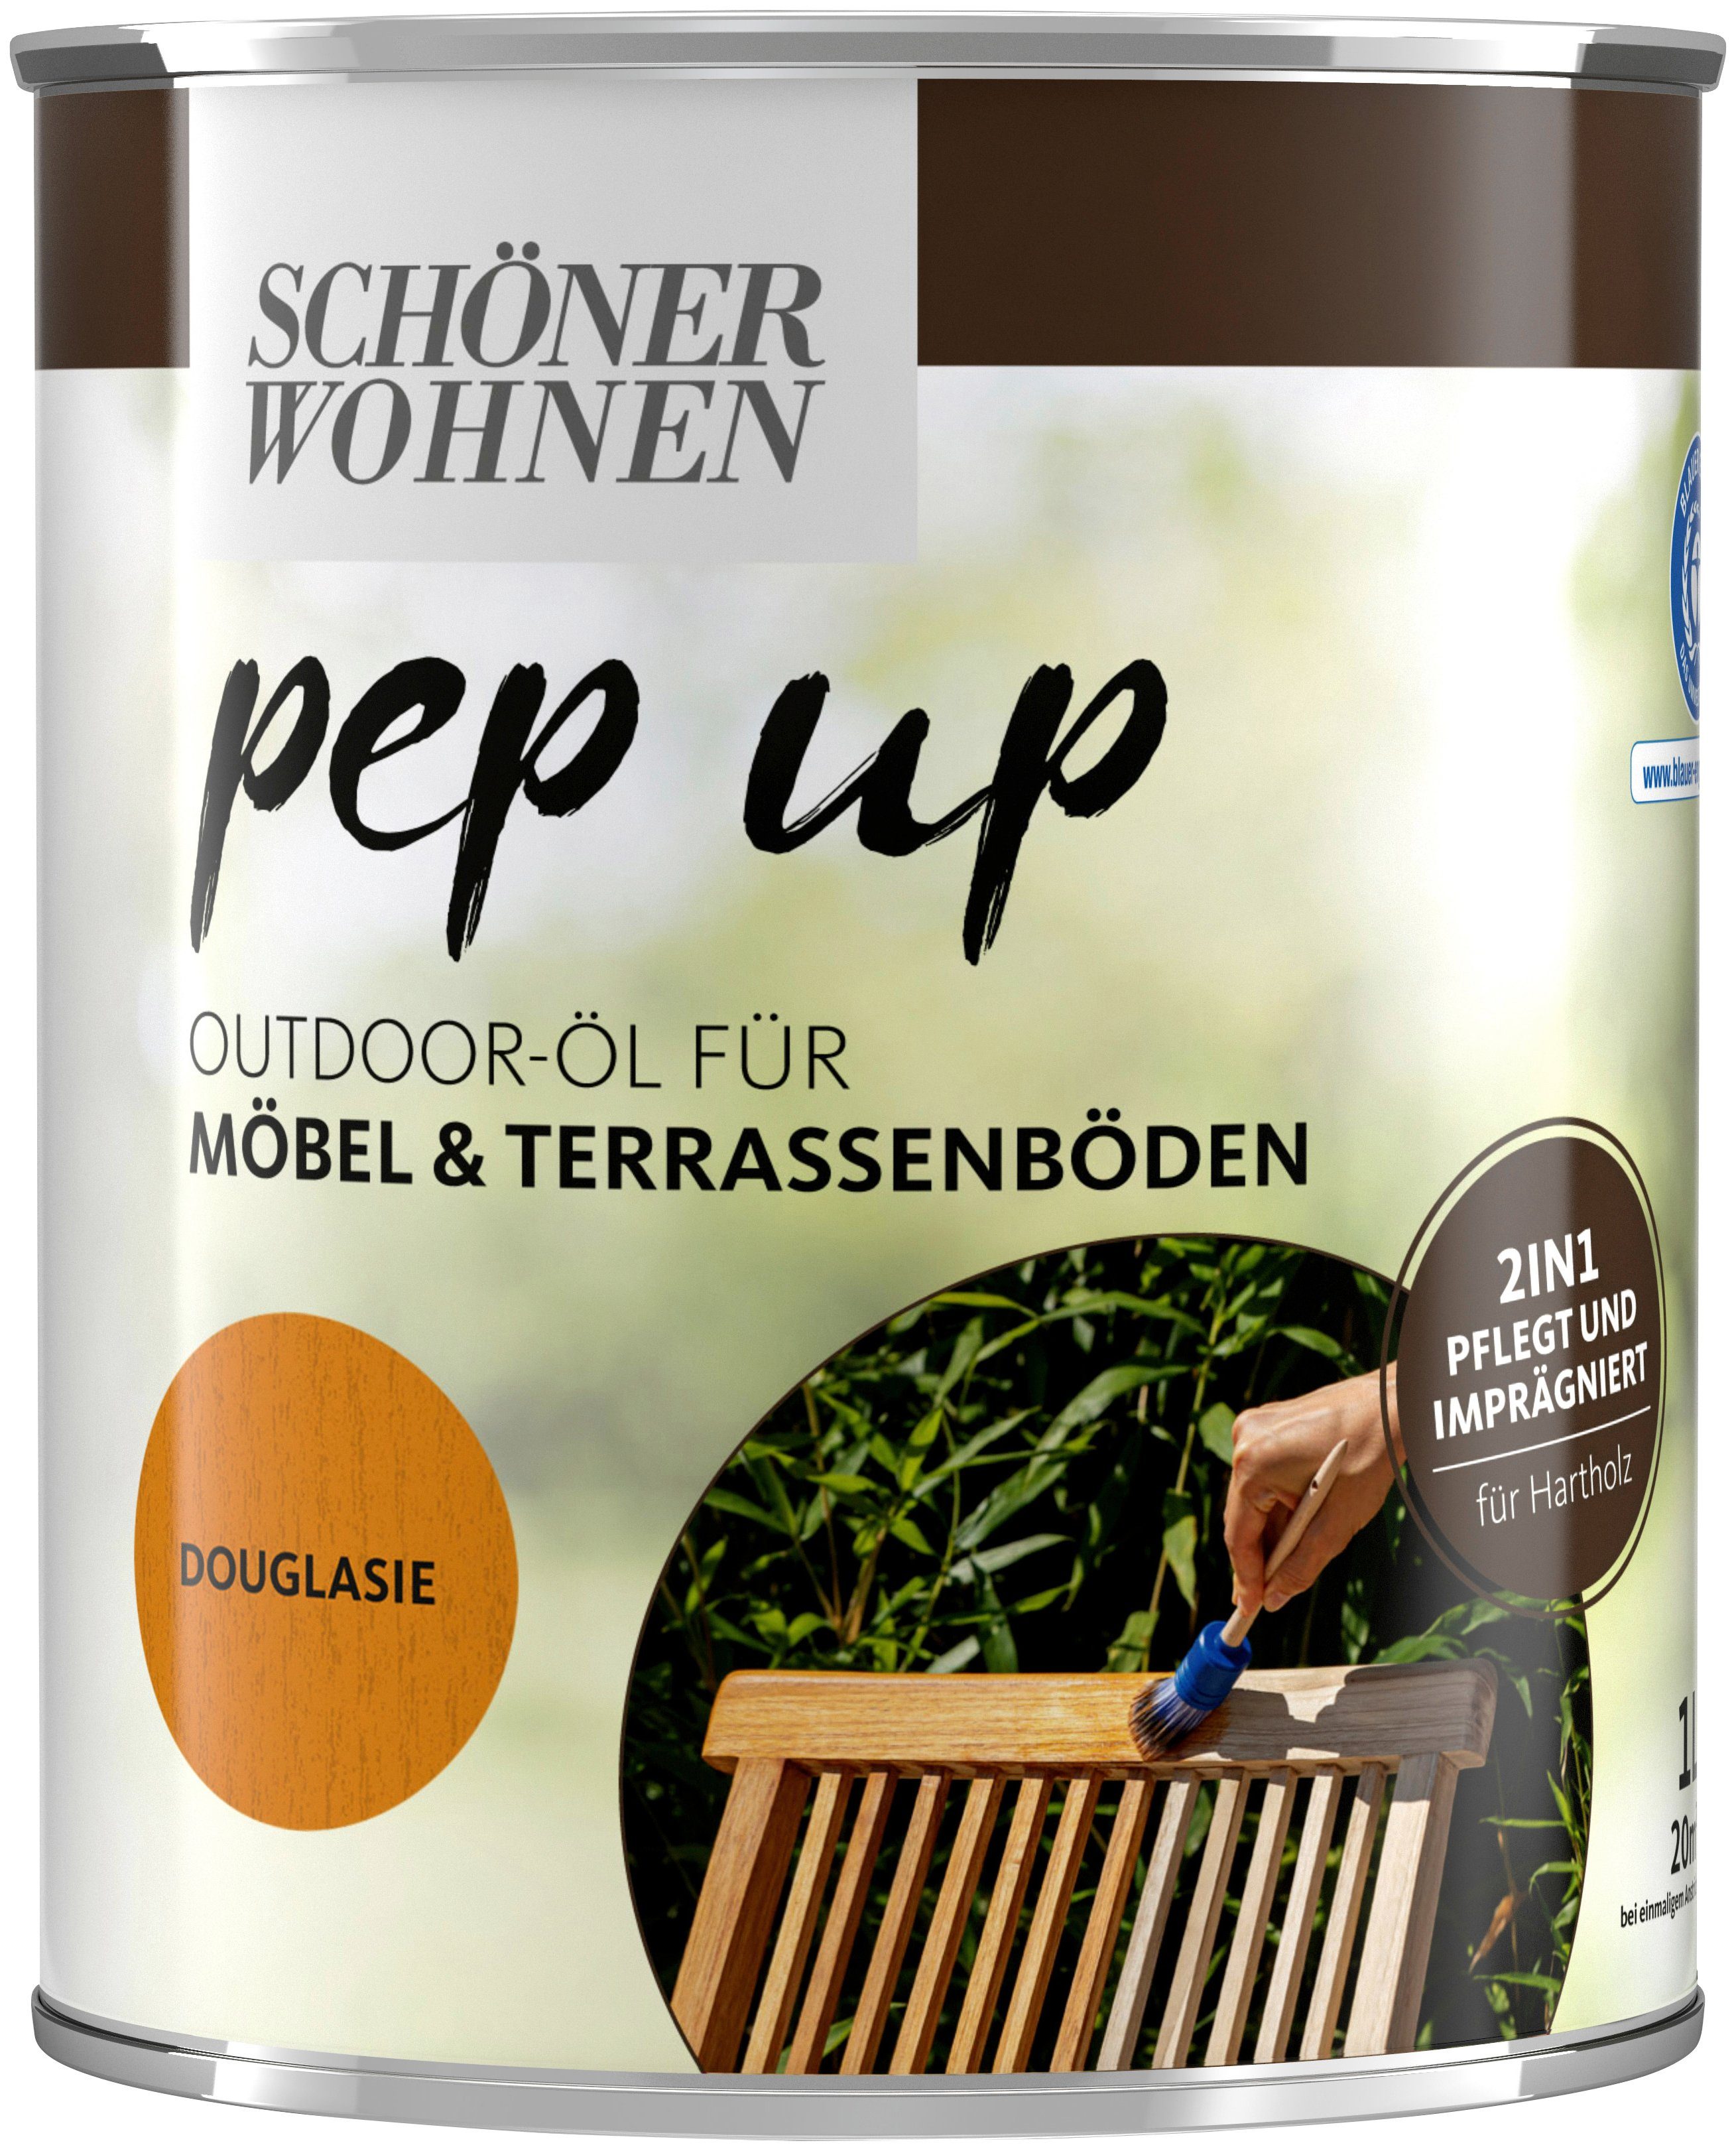 SCHÖNER WOHNEN FARBE Holzöl pep up Outdoor, 1 Liter, für Möbel & Terrassenböden, pflegt & imprägniert douglasie